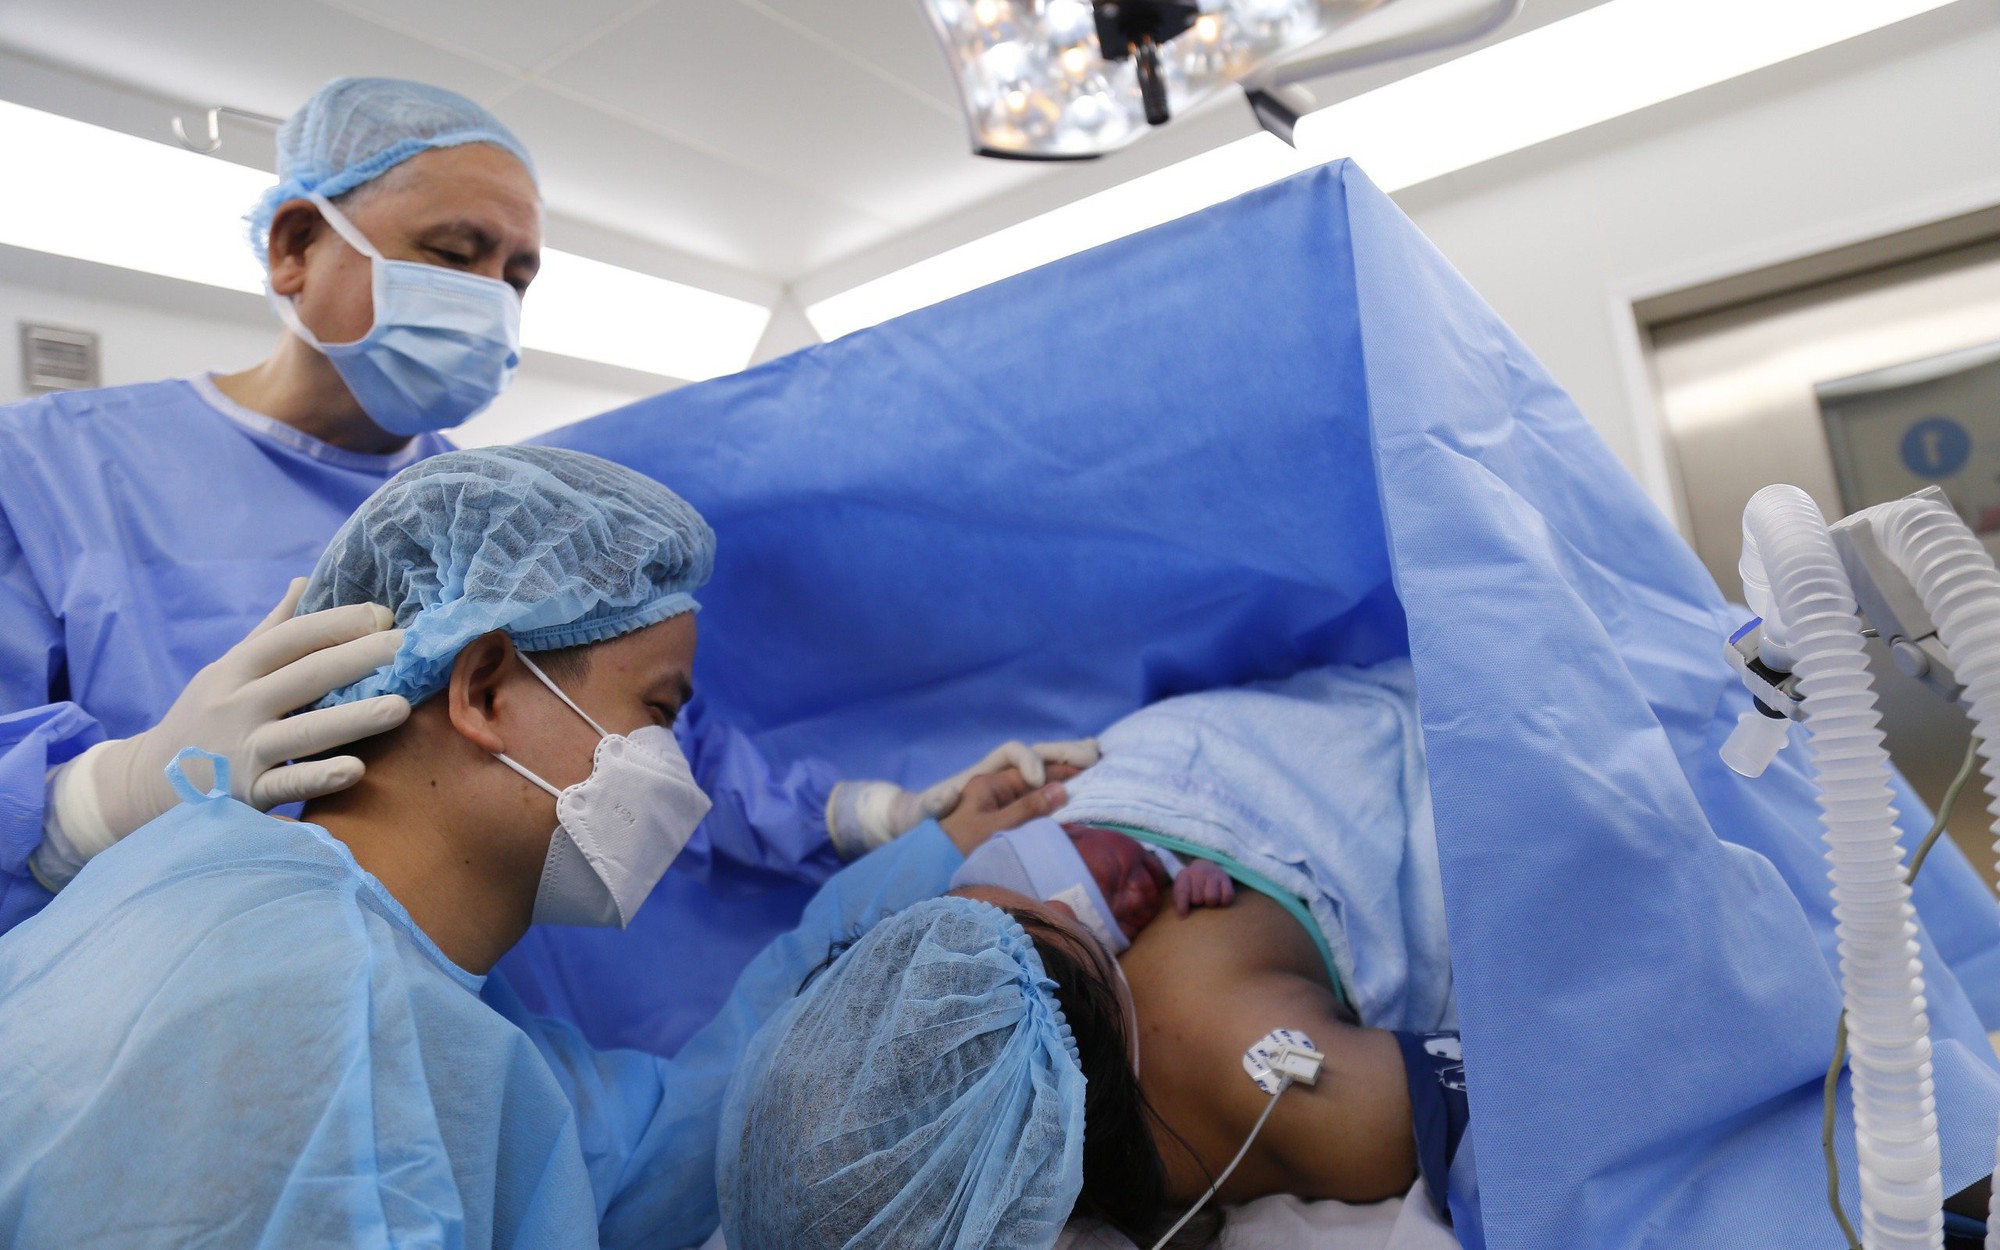 Em bé đầu tiên ở Việt Nam được thông van tim từ trong bào thai chào đời khỏe mạnh